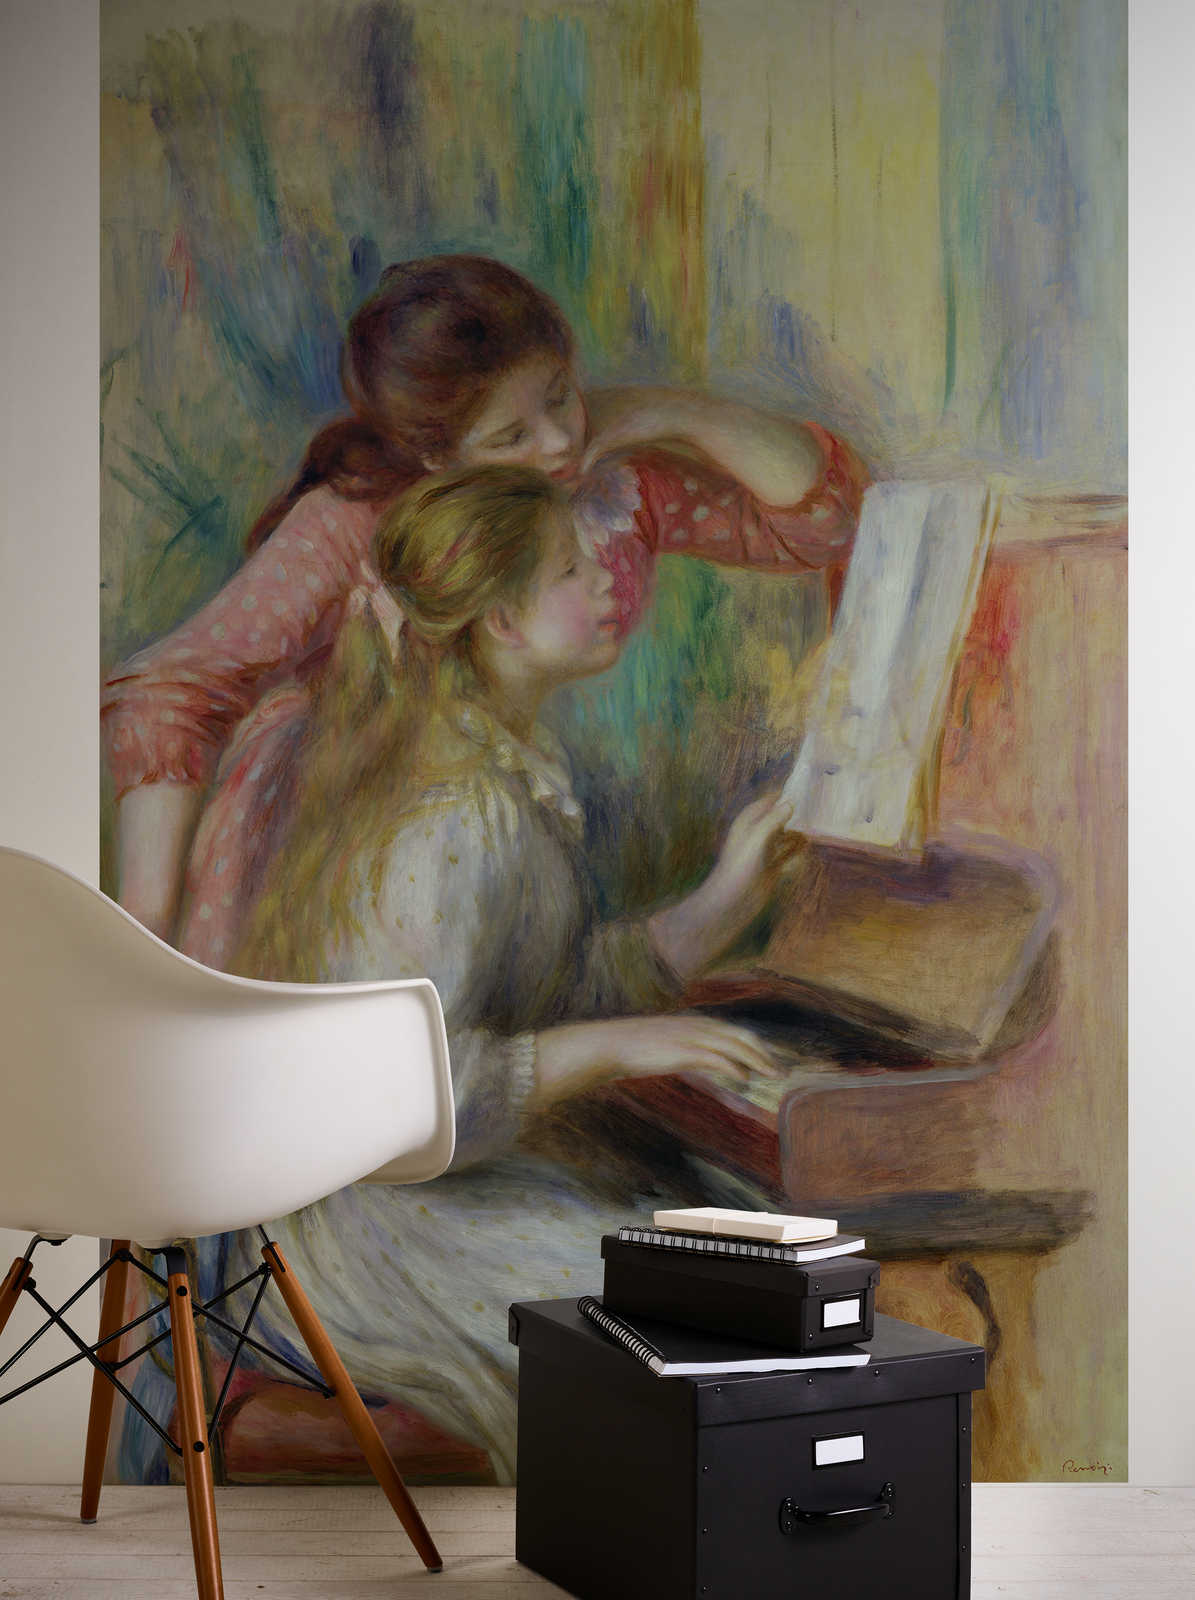             Ragazze al pianoforte" murale di Pierre Auguste Renoir
        